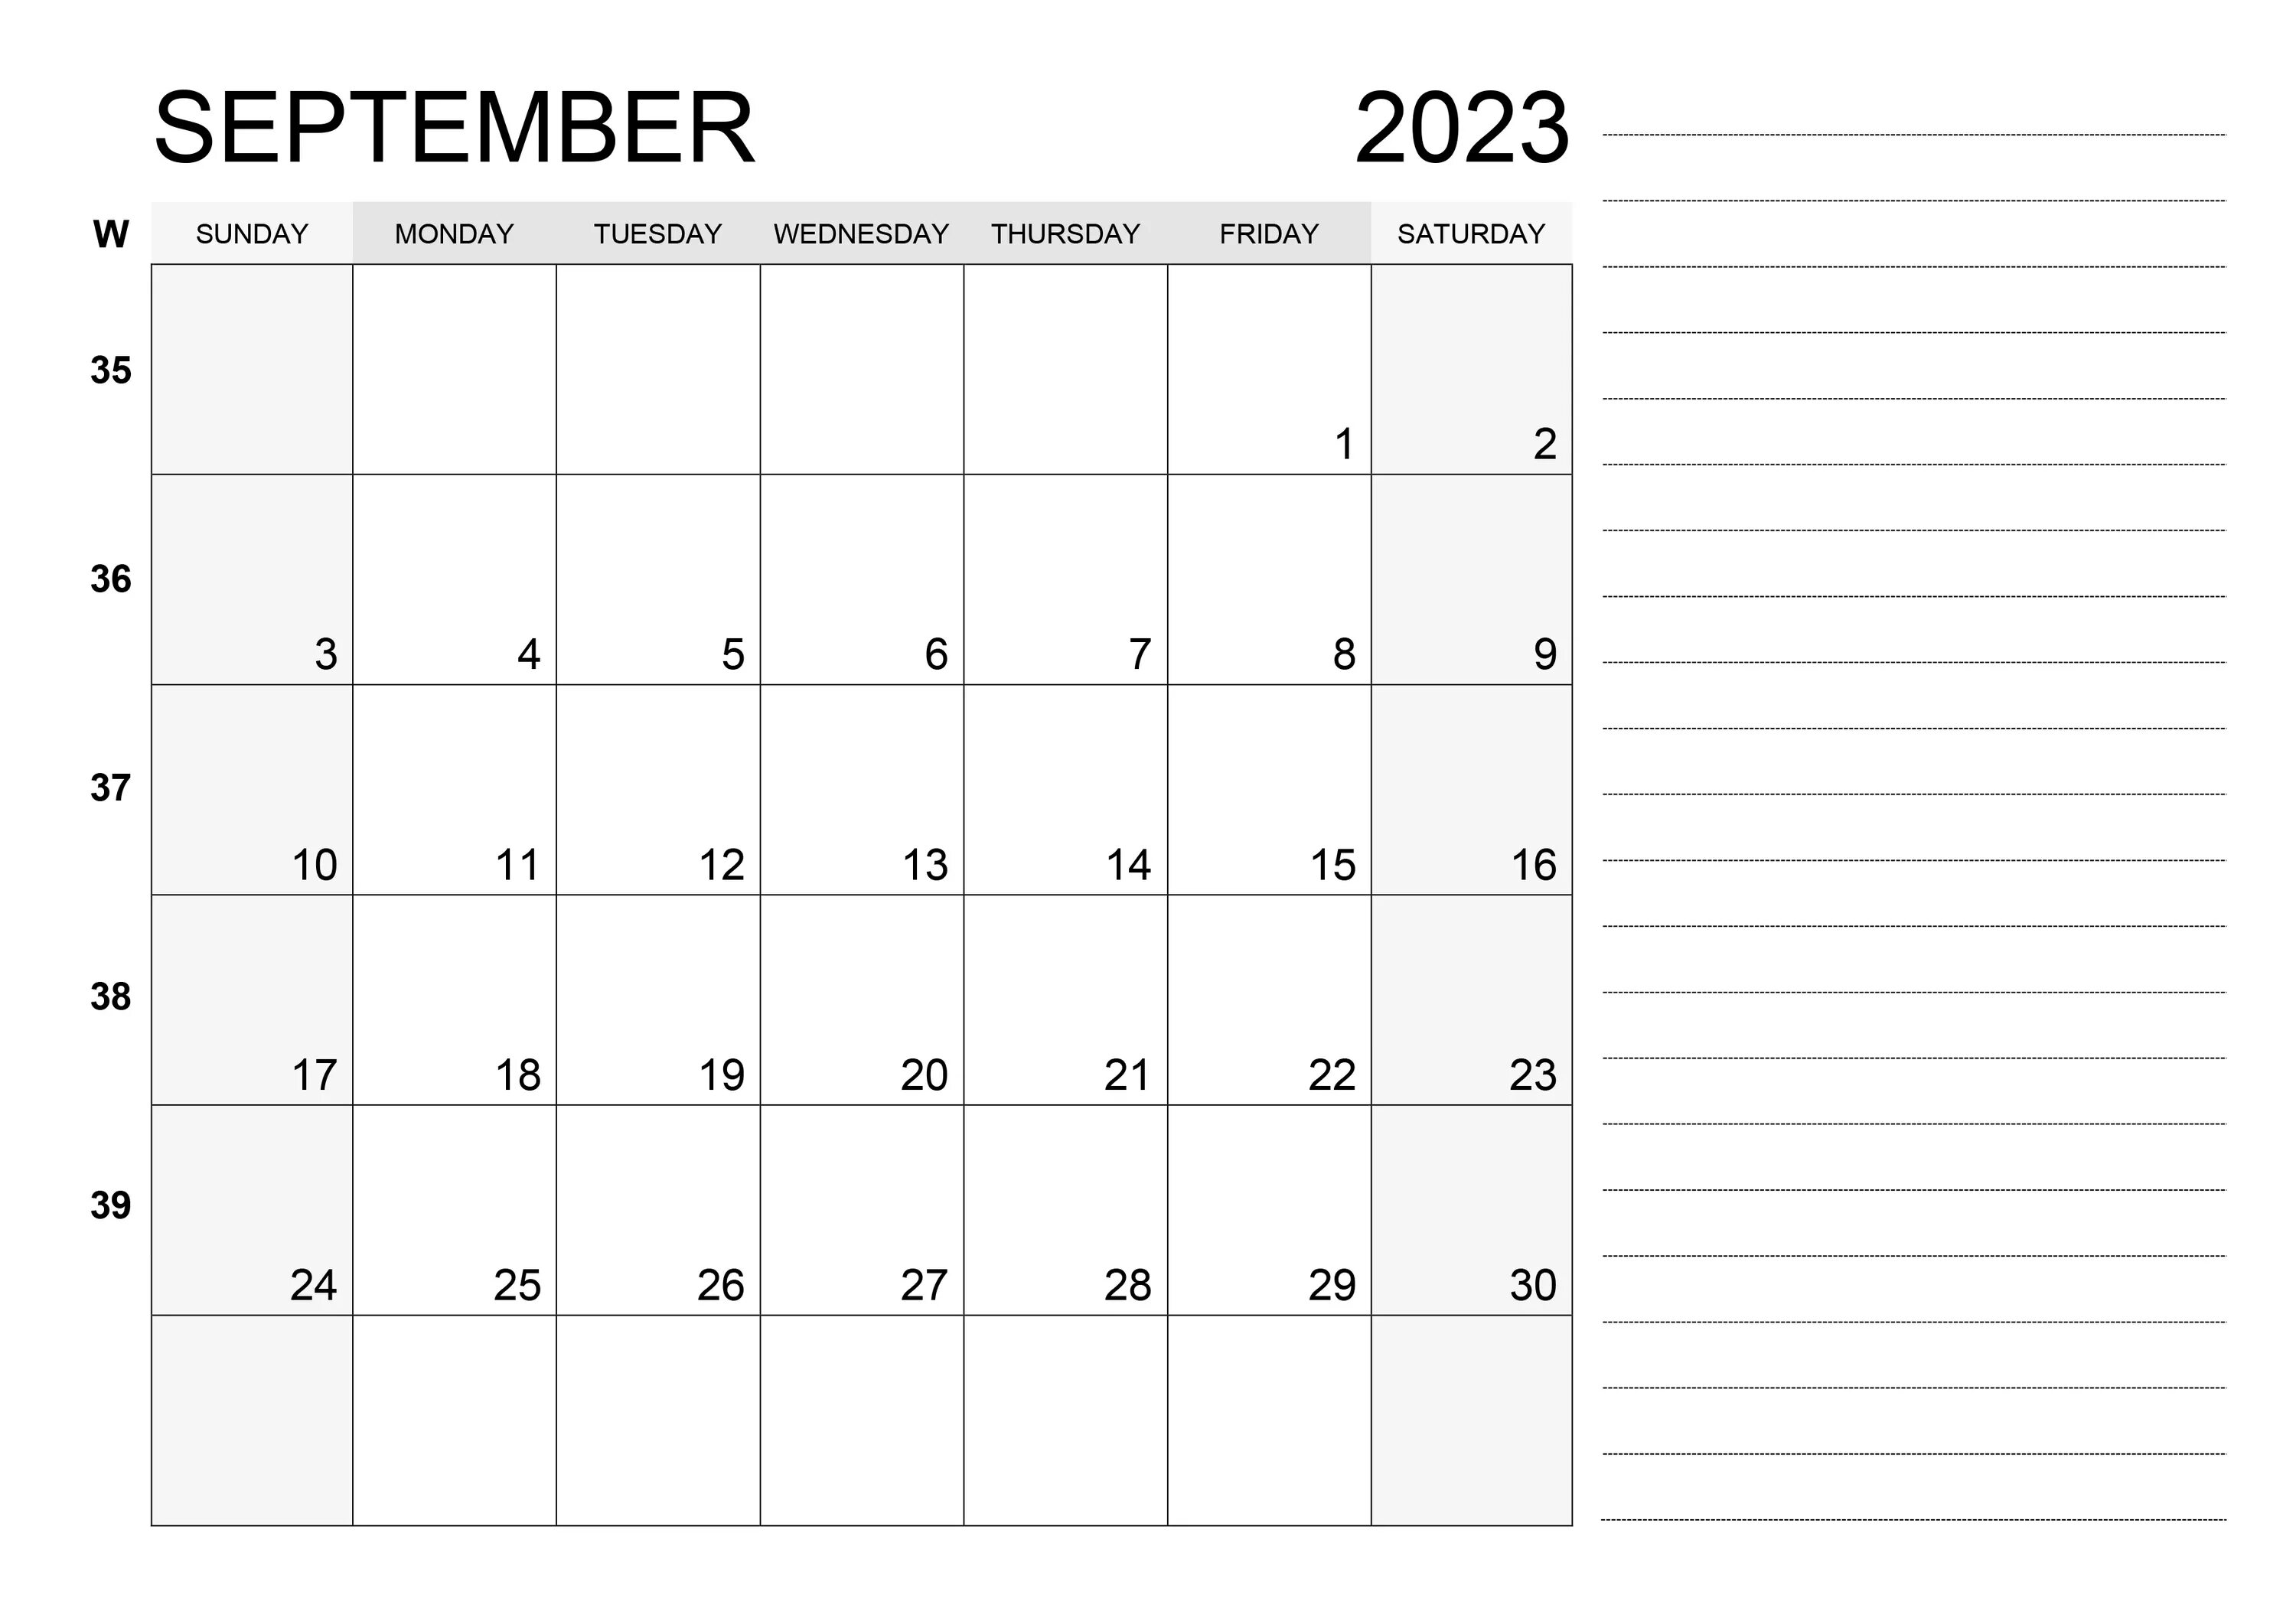 Персонифицированный за декабрь 2023. Октябрь 2023 года. Календарь 2023. Ноябрь декабрь 2023. Календарь наоктябпь 2023.